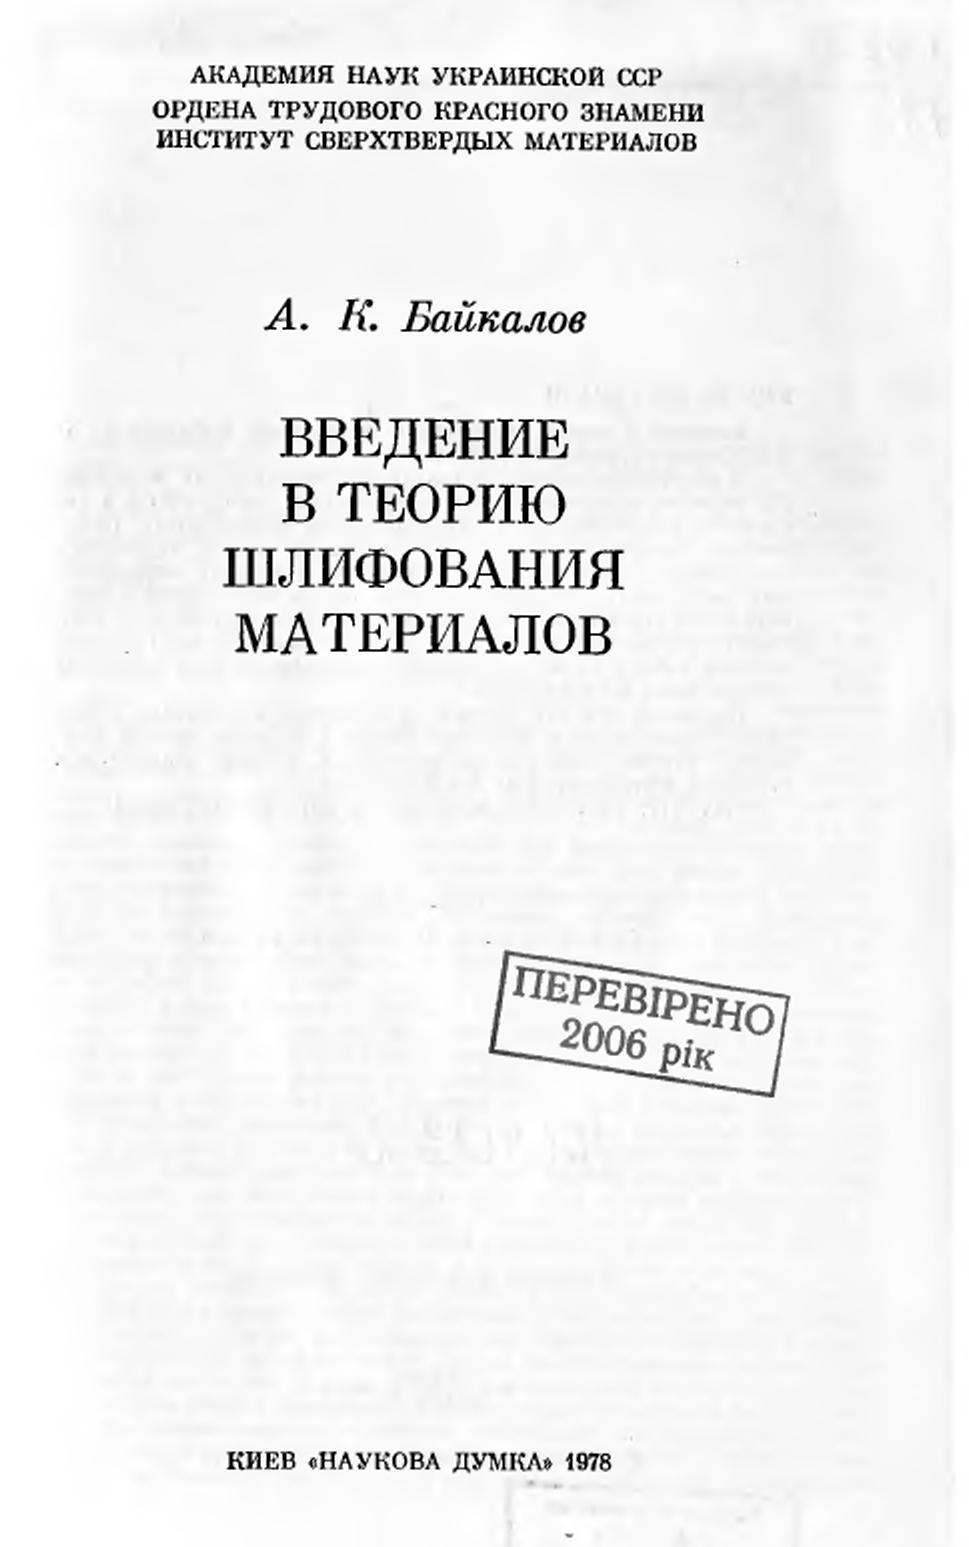 Введение в теорию шлифования материалов, Байкалов А.К., 1978